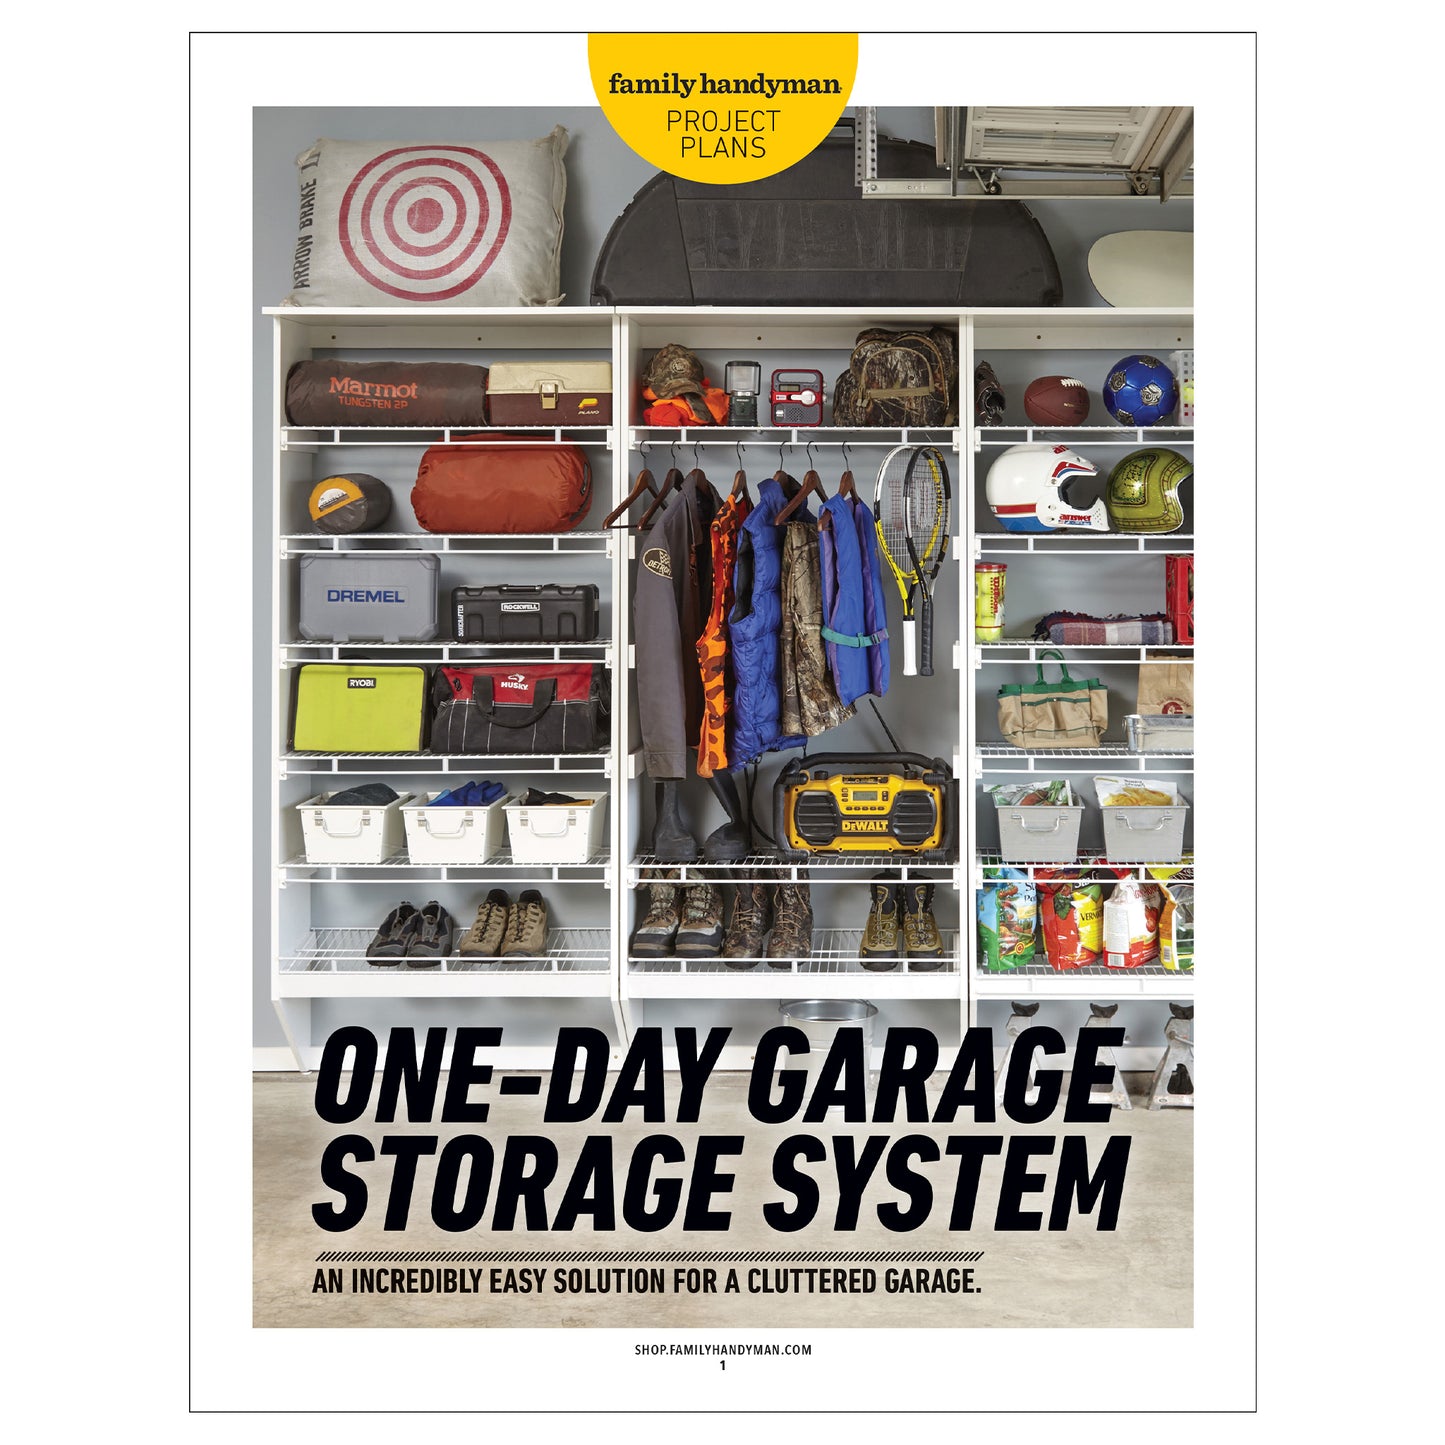 One-Day Garage Storage System